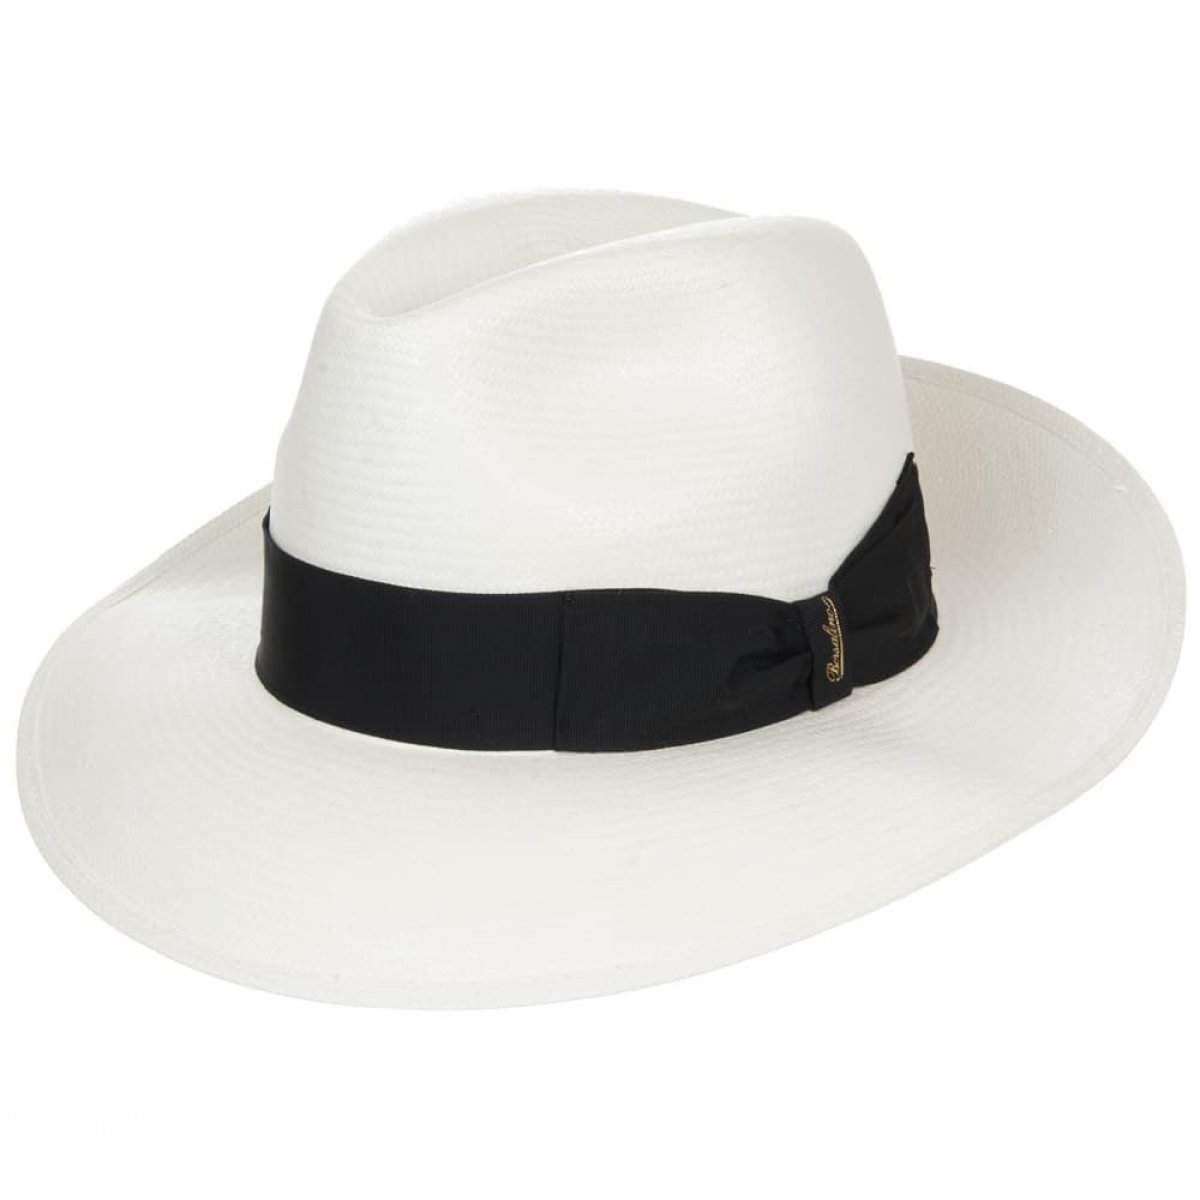 Ombra Cappello da Donna da Uomo con Cappello a Tesa Larga in Piuma Cappello da Panama Pop Cappello da Viaggio allaperto Elegante Colore : Blu, Dimensione : 56-58 